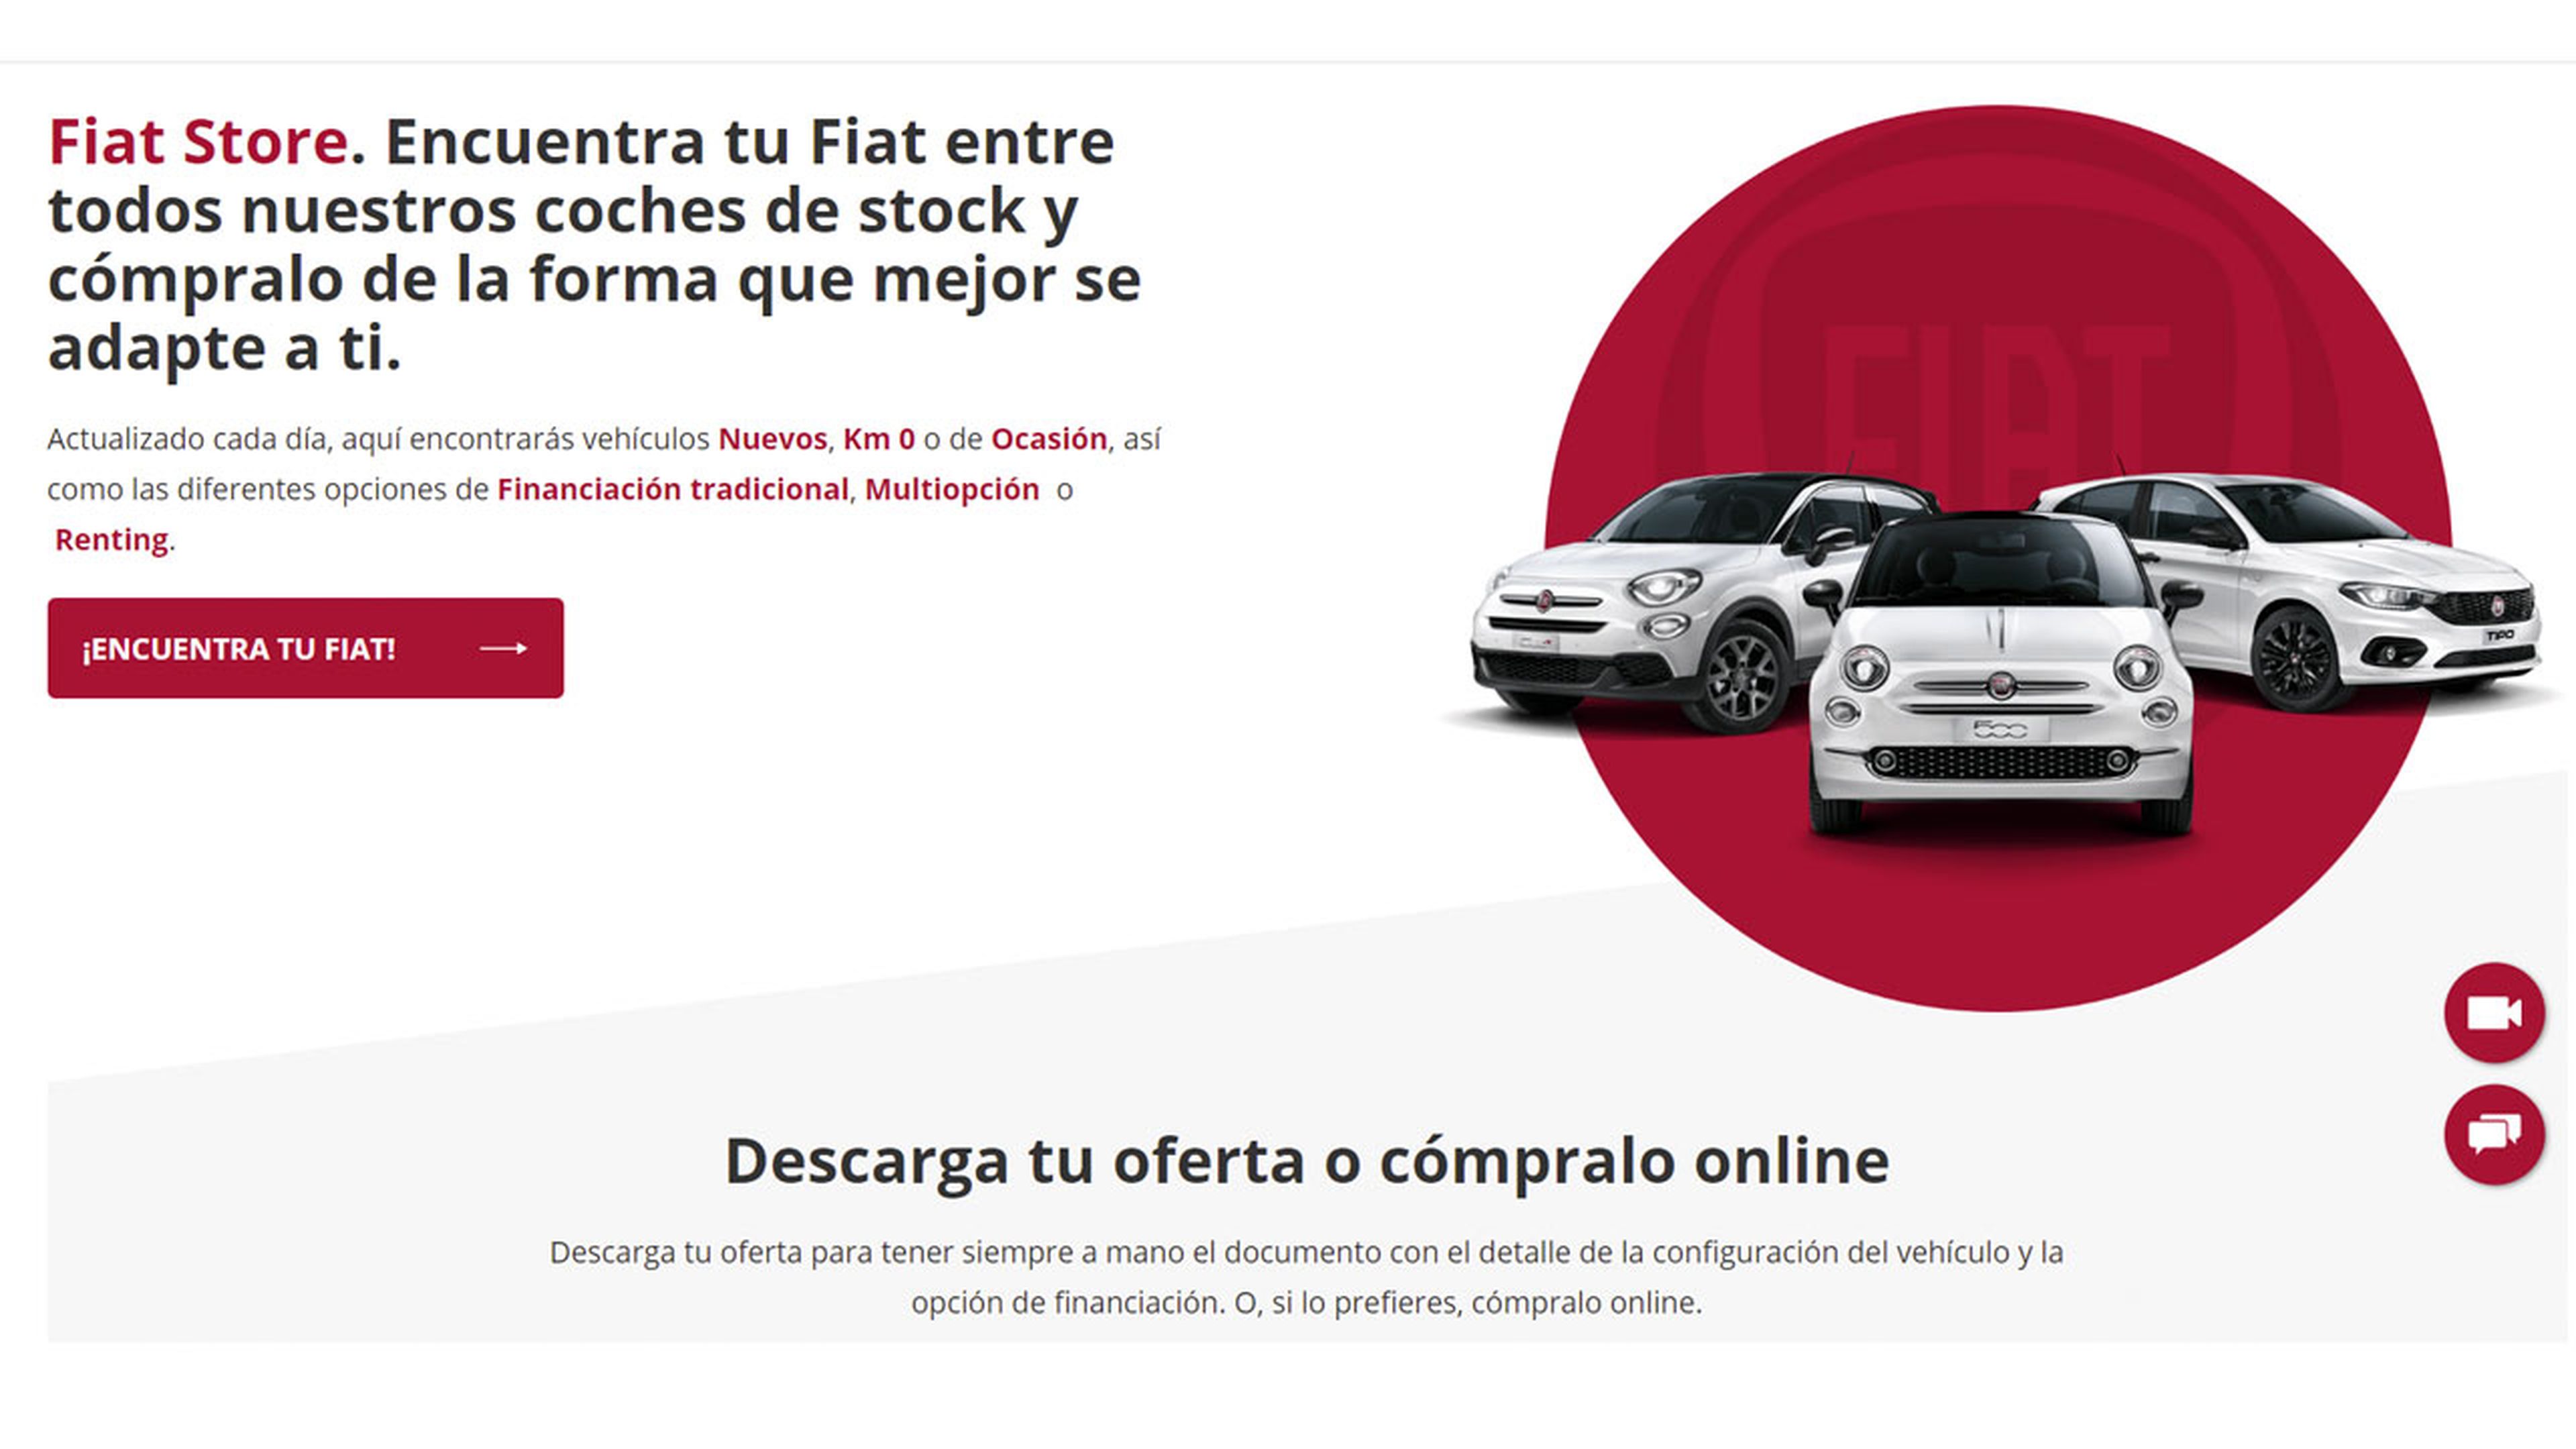 Fiat compra coche online